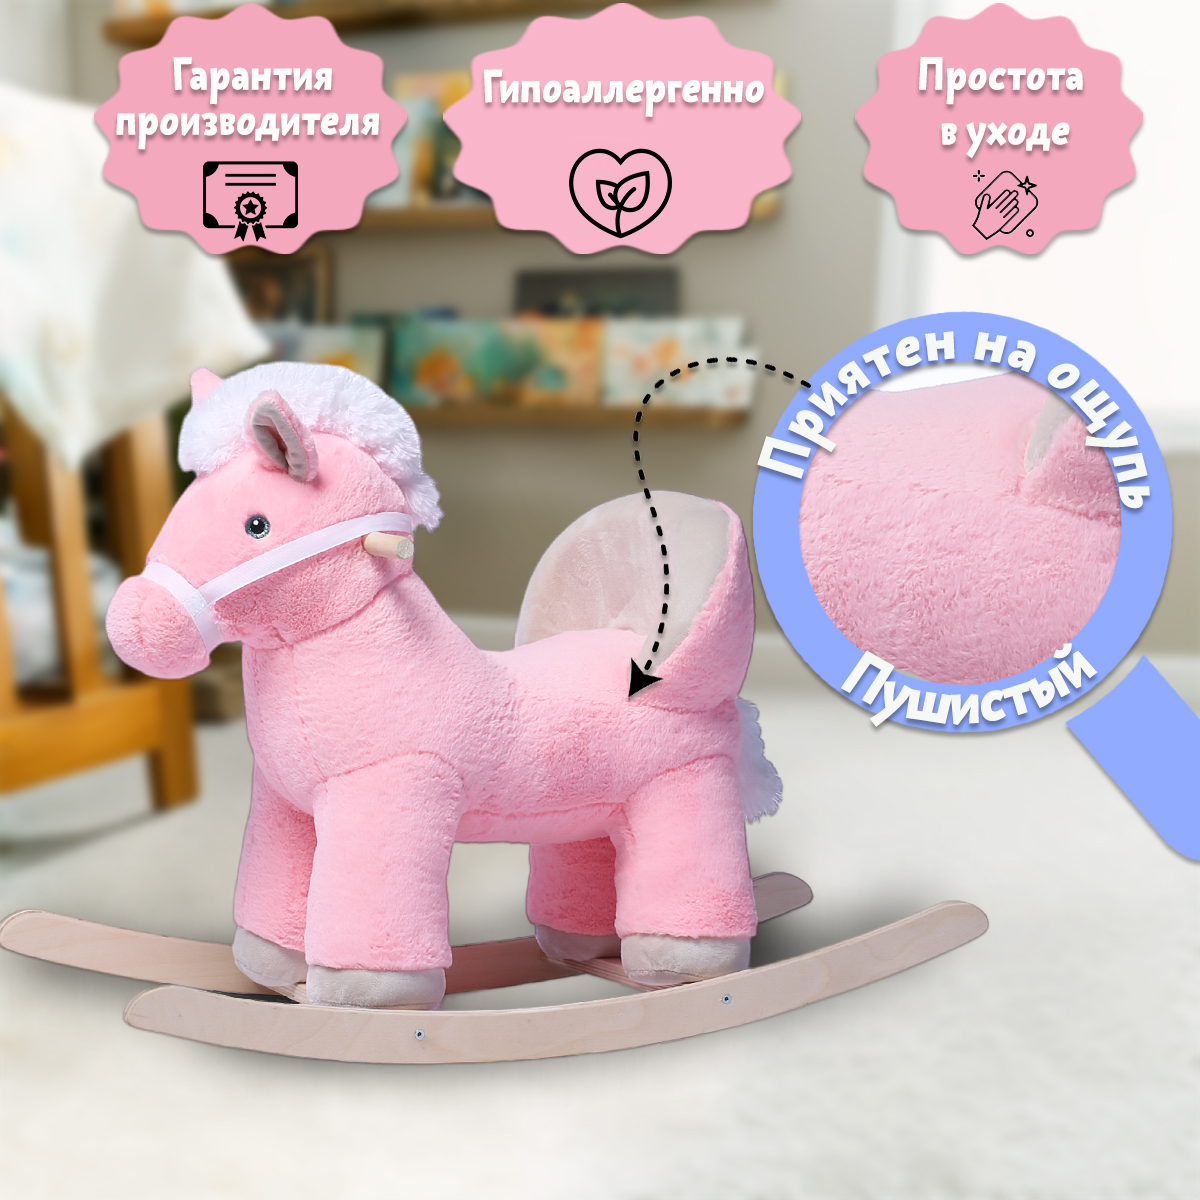 Качалка Нижегородская игрушка Лошадь розовая - фото 7